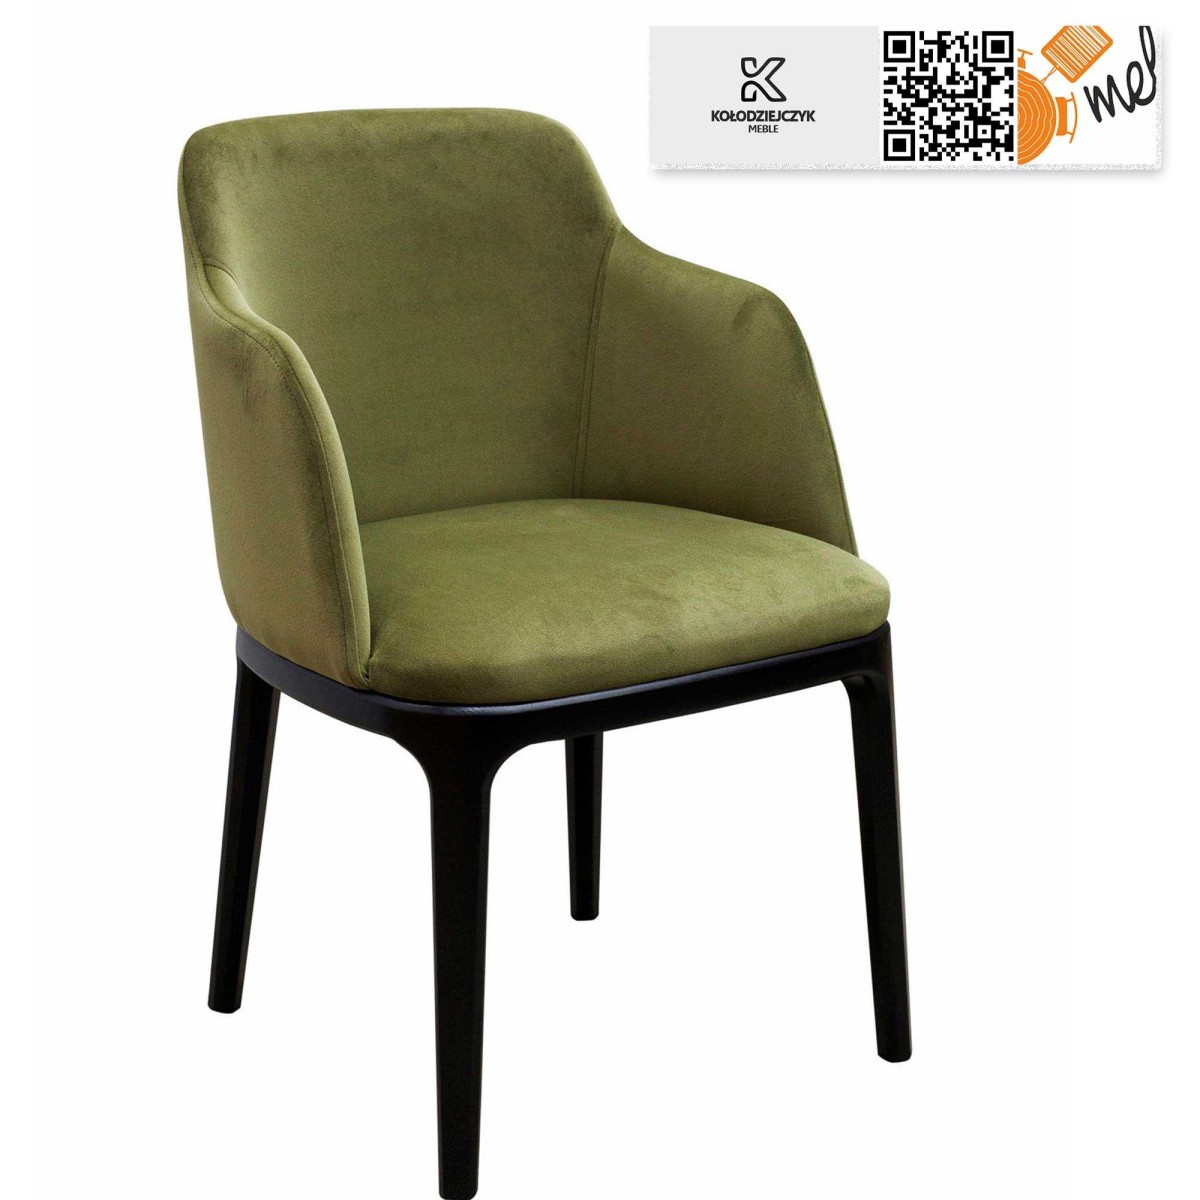 krzeslo k118 nowoczesne tapicerowane nogi metalowe